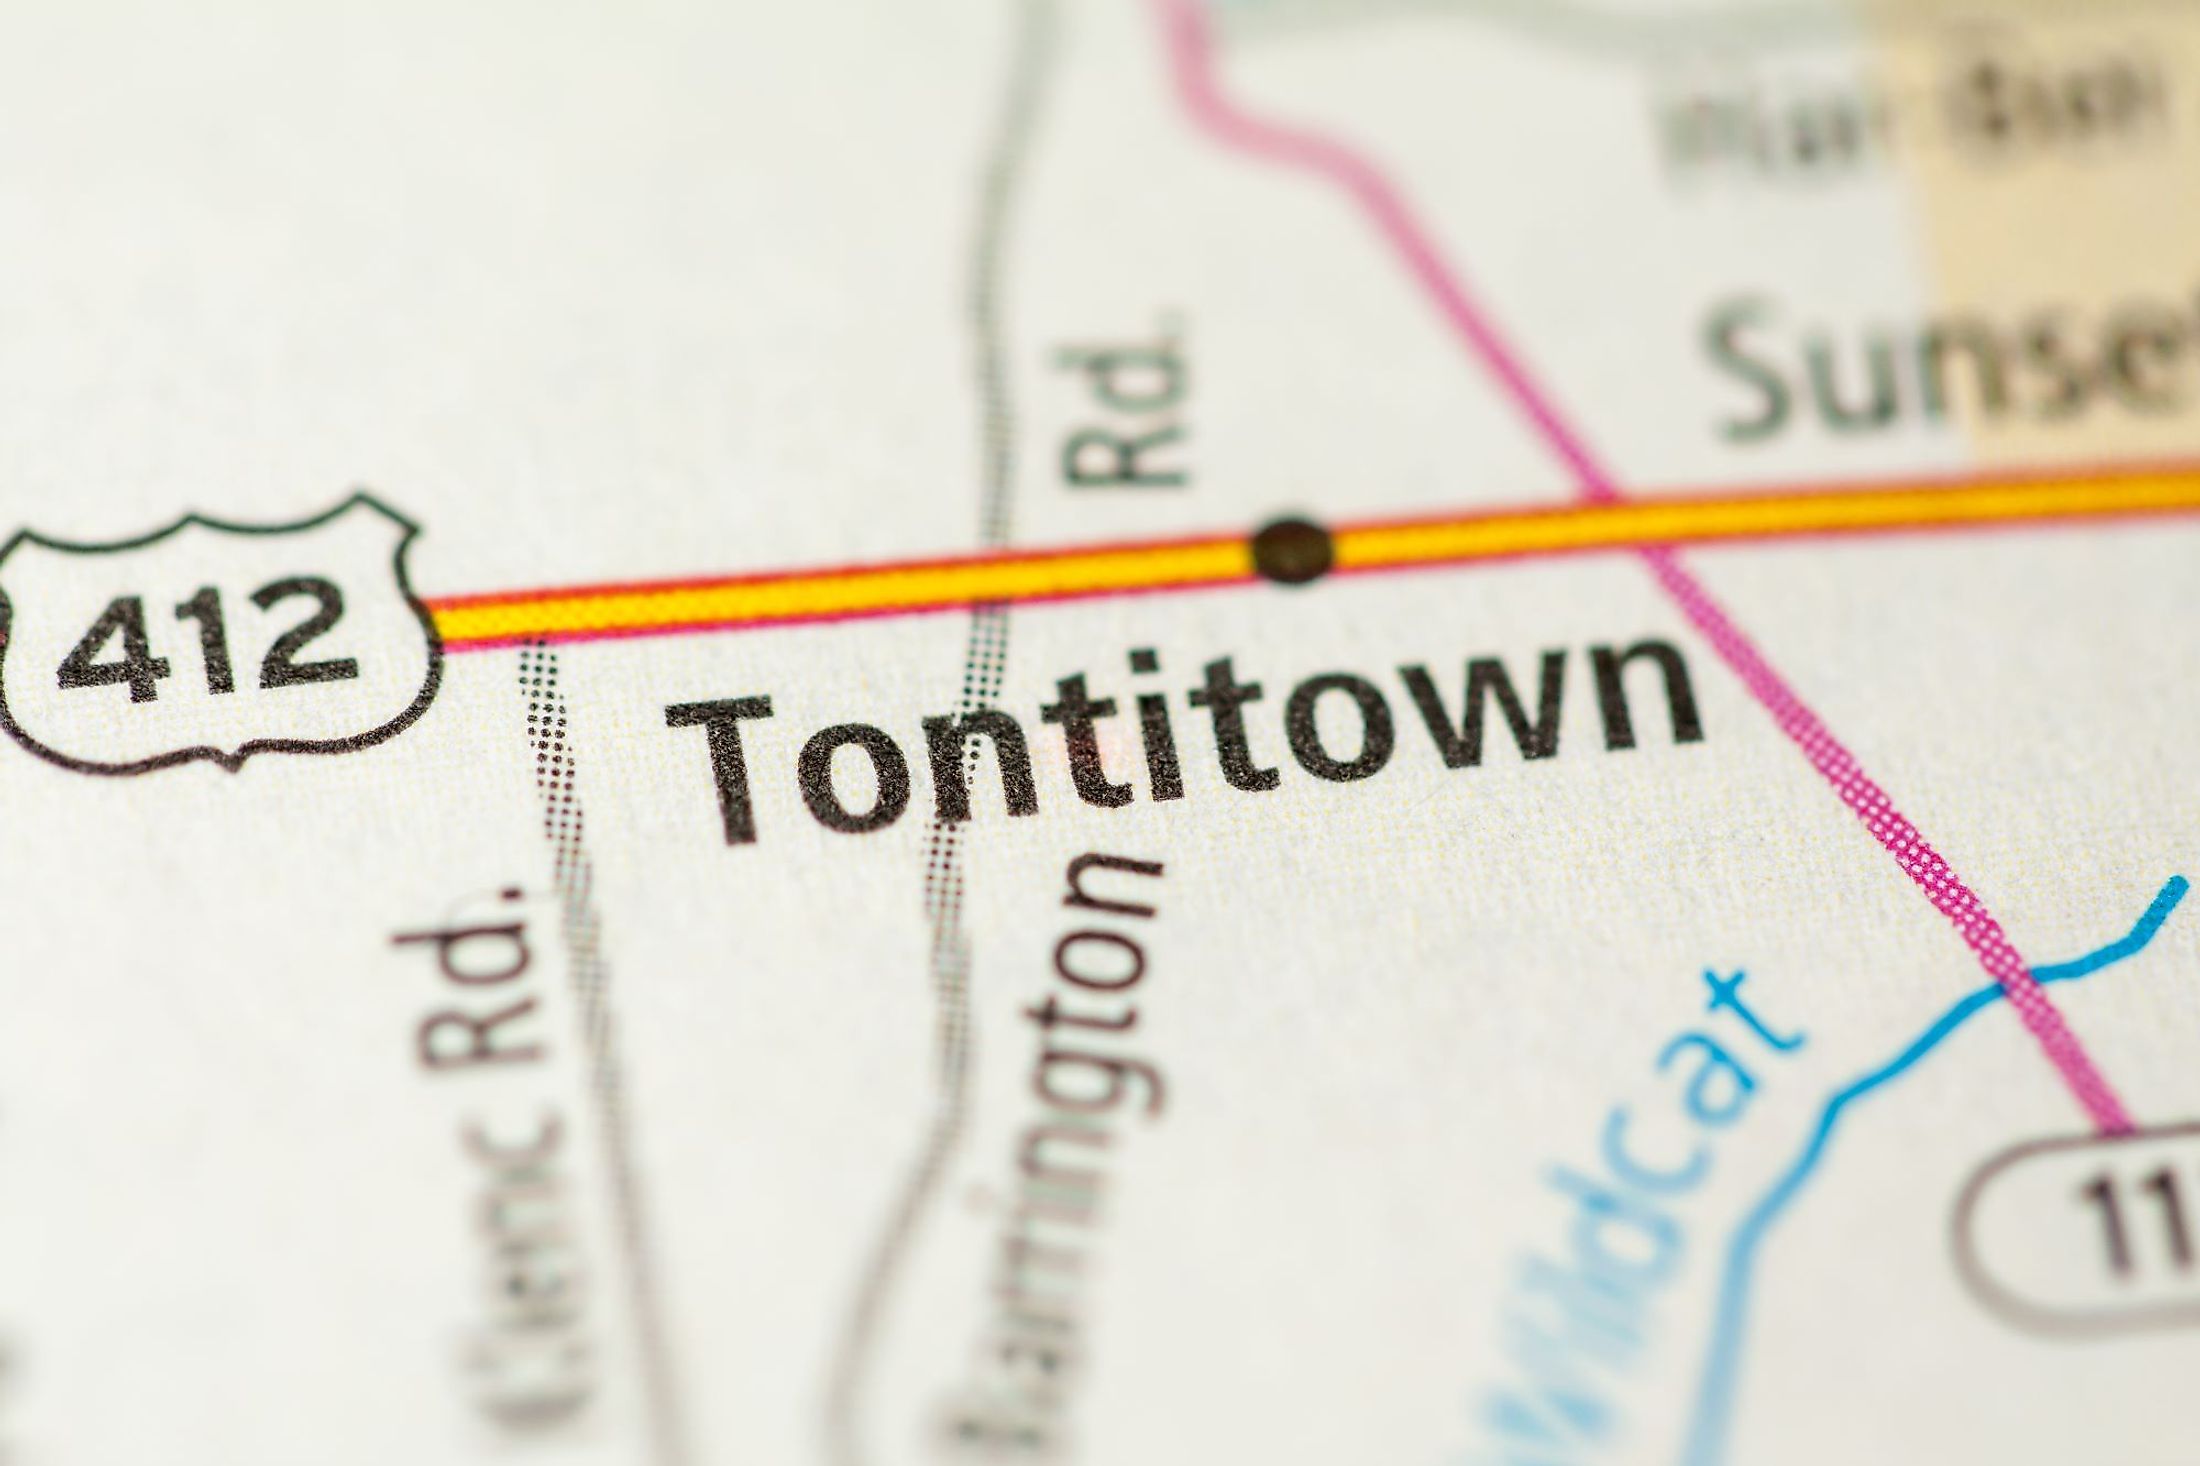 Tontitown, Arkansas